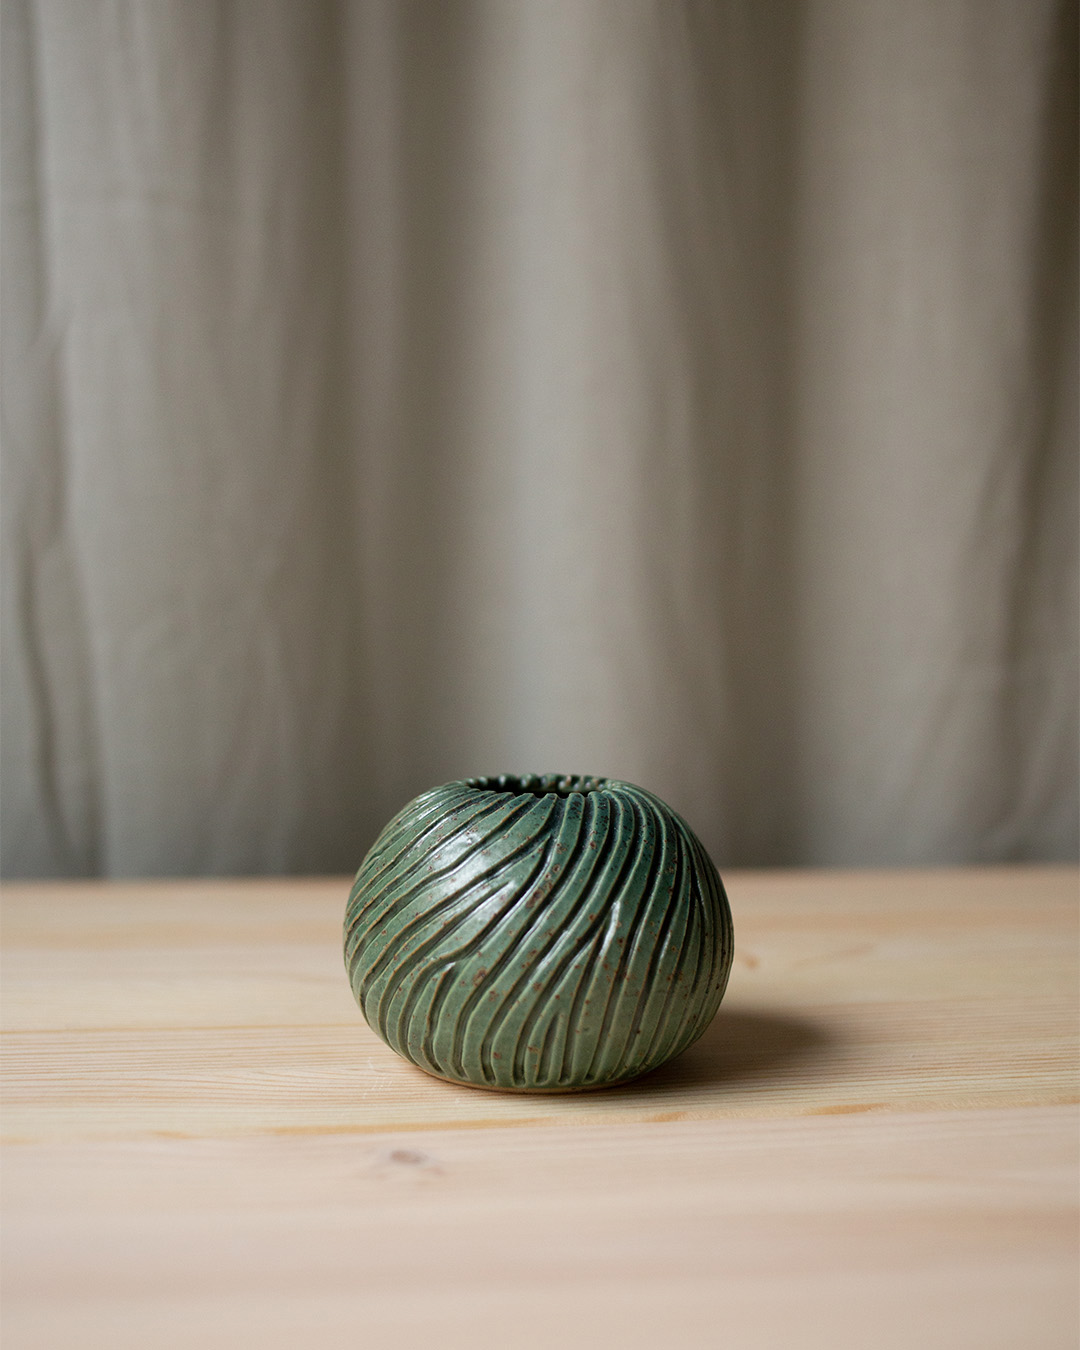 Vase – Havsanemon II by Emelie Zetterberg